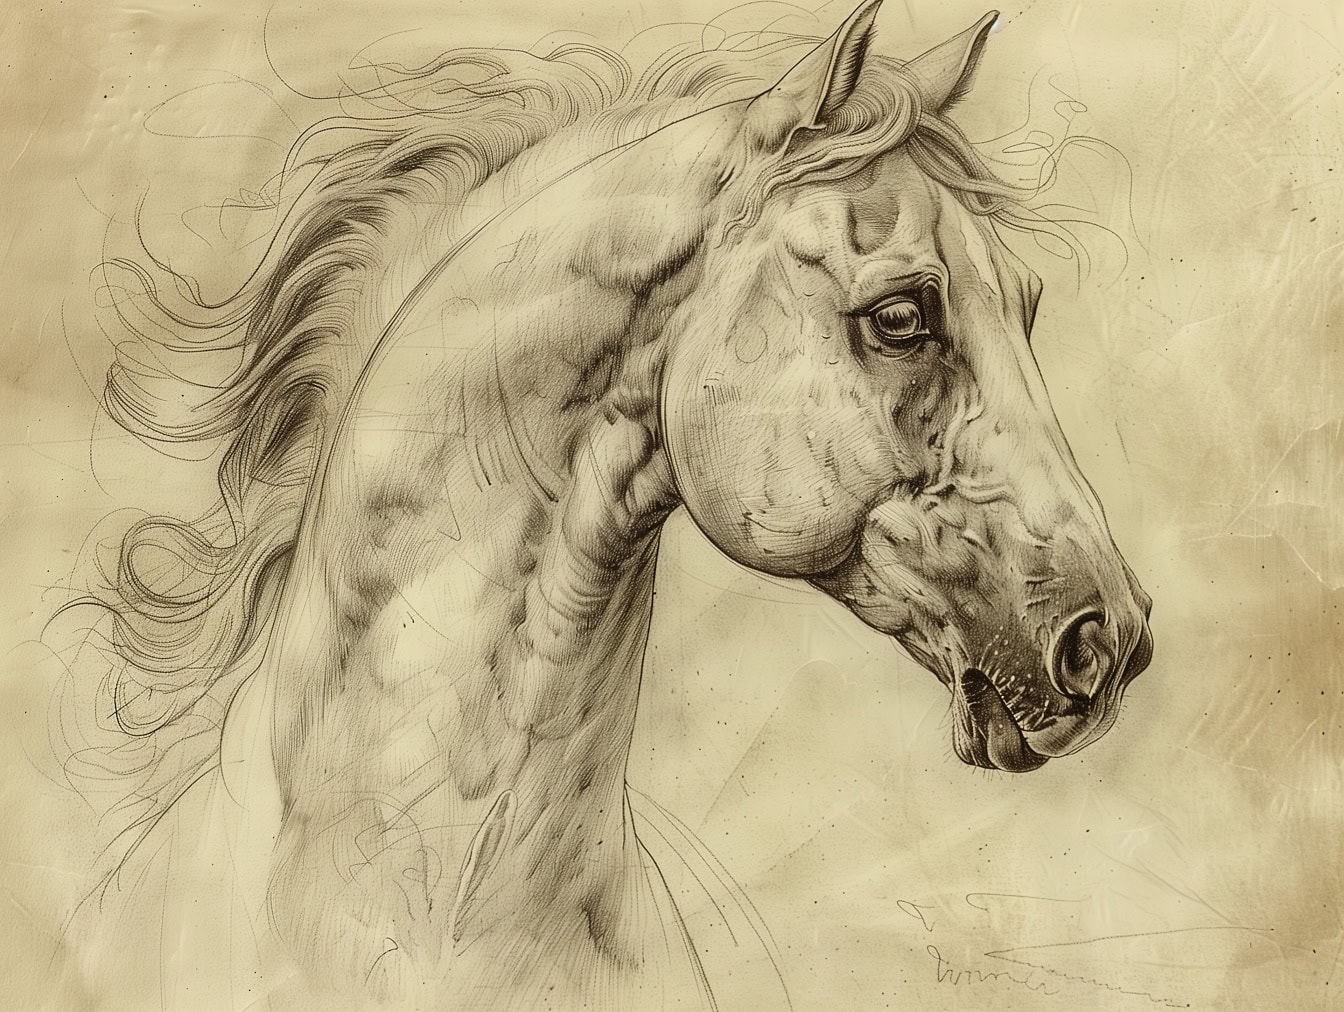 Super szczegółowy szkic głowy konia ze szczegółami nosa, pyska i oka ogiera